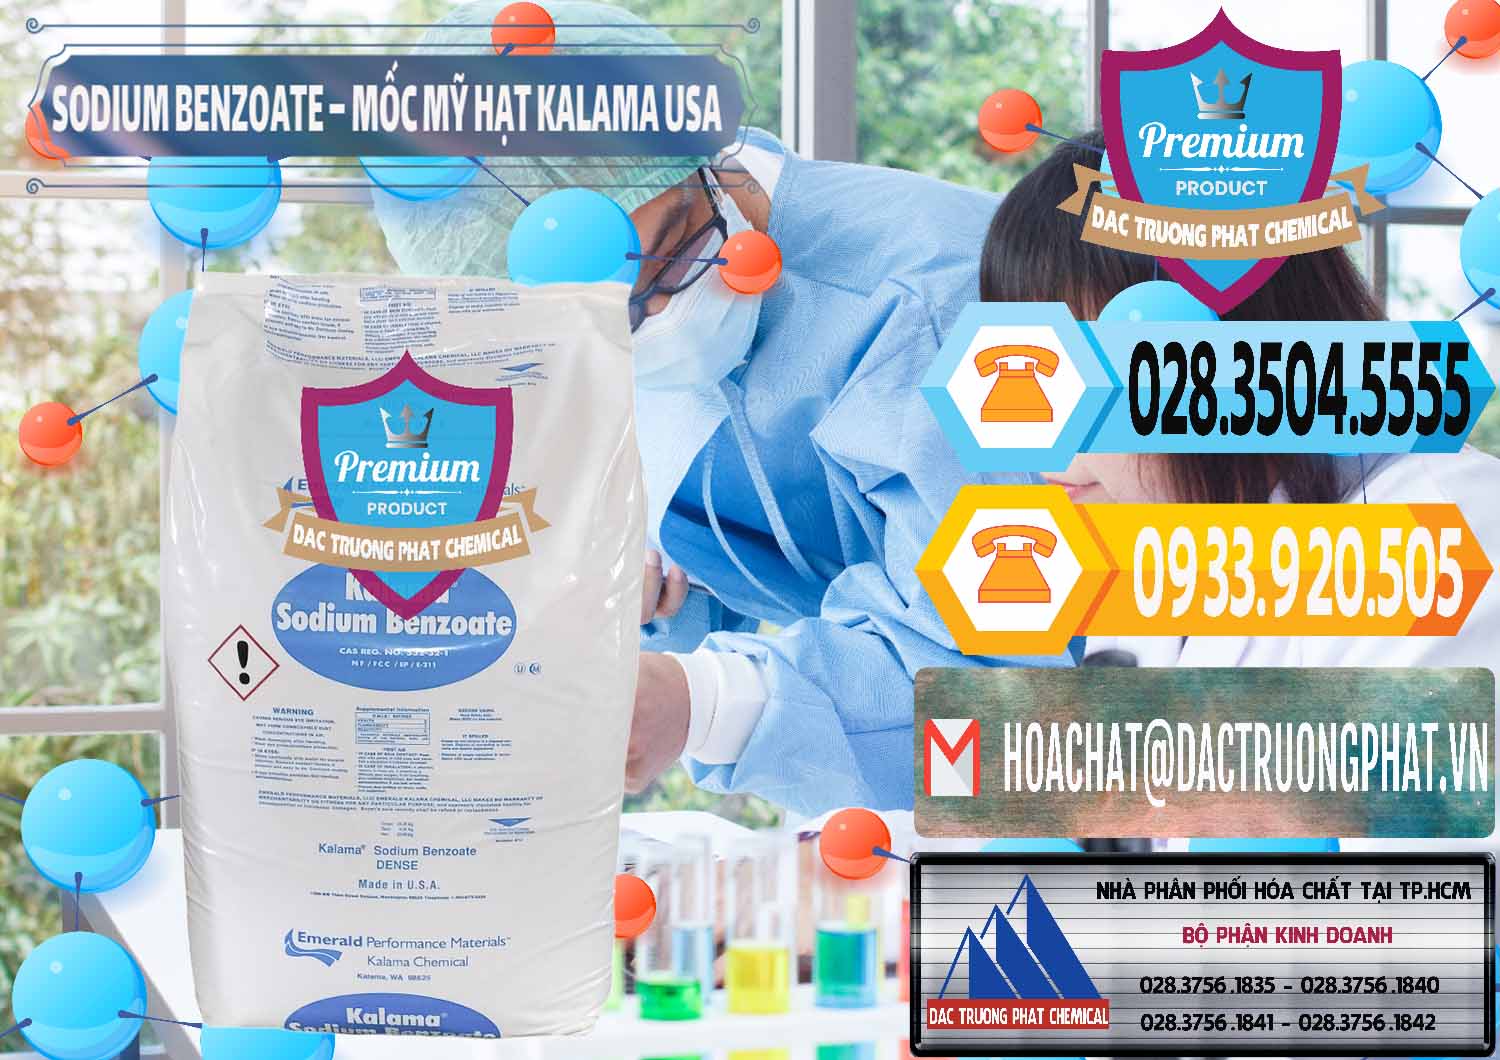 Cty chuyên cung ứng _ bán Sodium Benzoate - Mốc Hạt Kalama Food Grade Mỹ Usa - 0137 - Đơn vị chuyên nhập khẩu _ cung cấp hóa chất tại TP.HCM - hoachattayrua.net